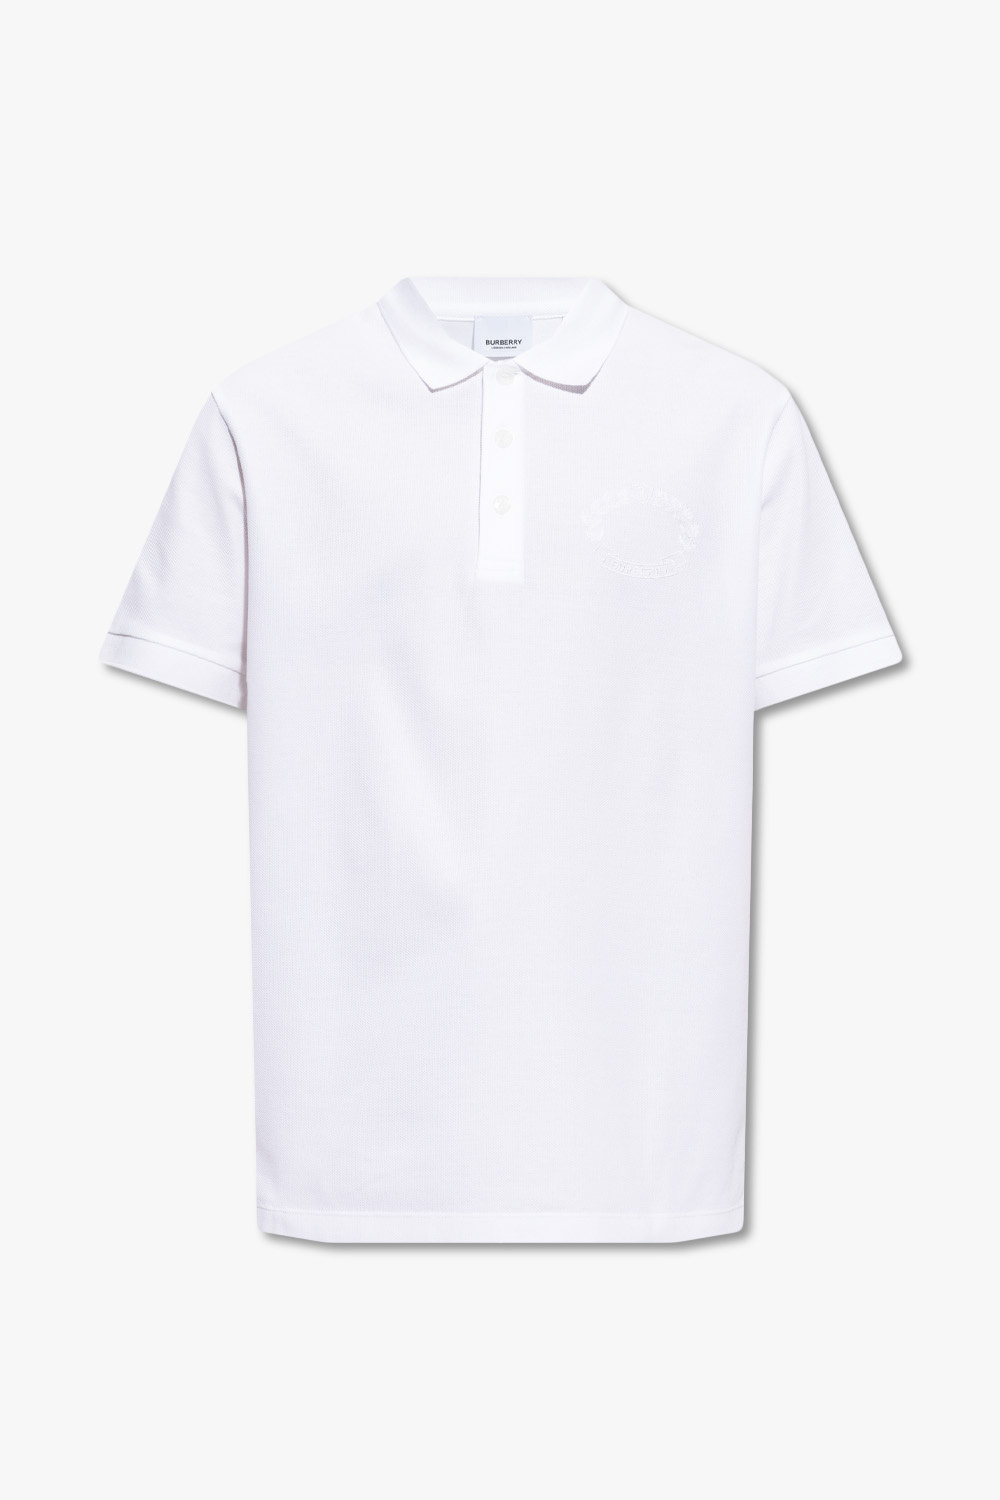 Burberry ‘Walworth’ ralph polo shirt